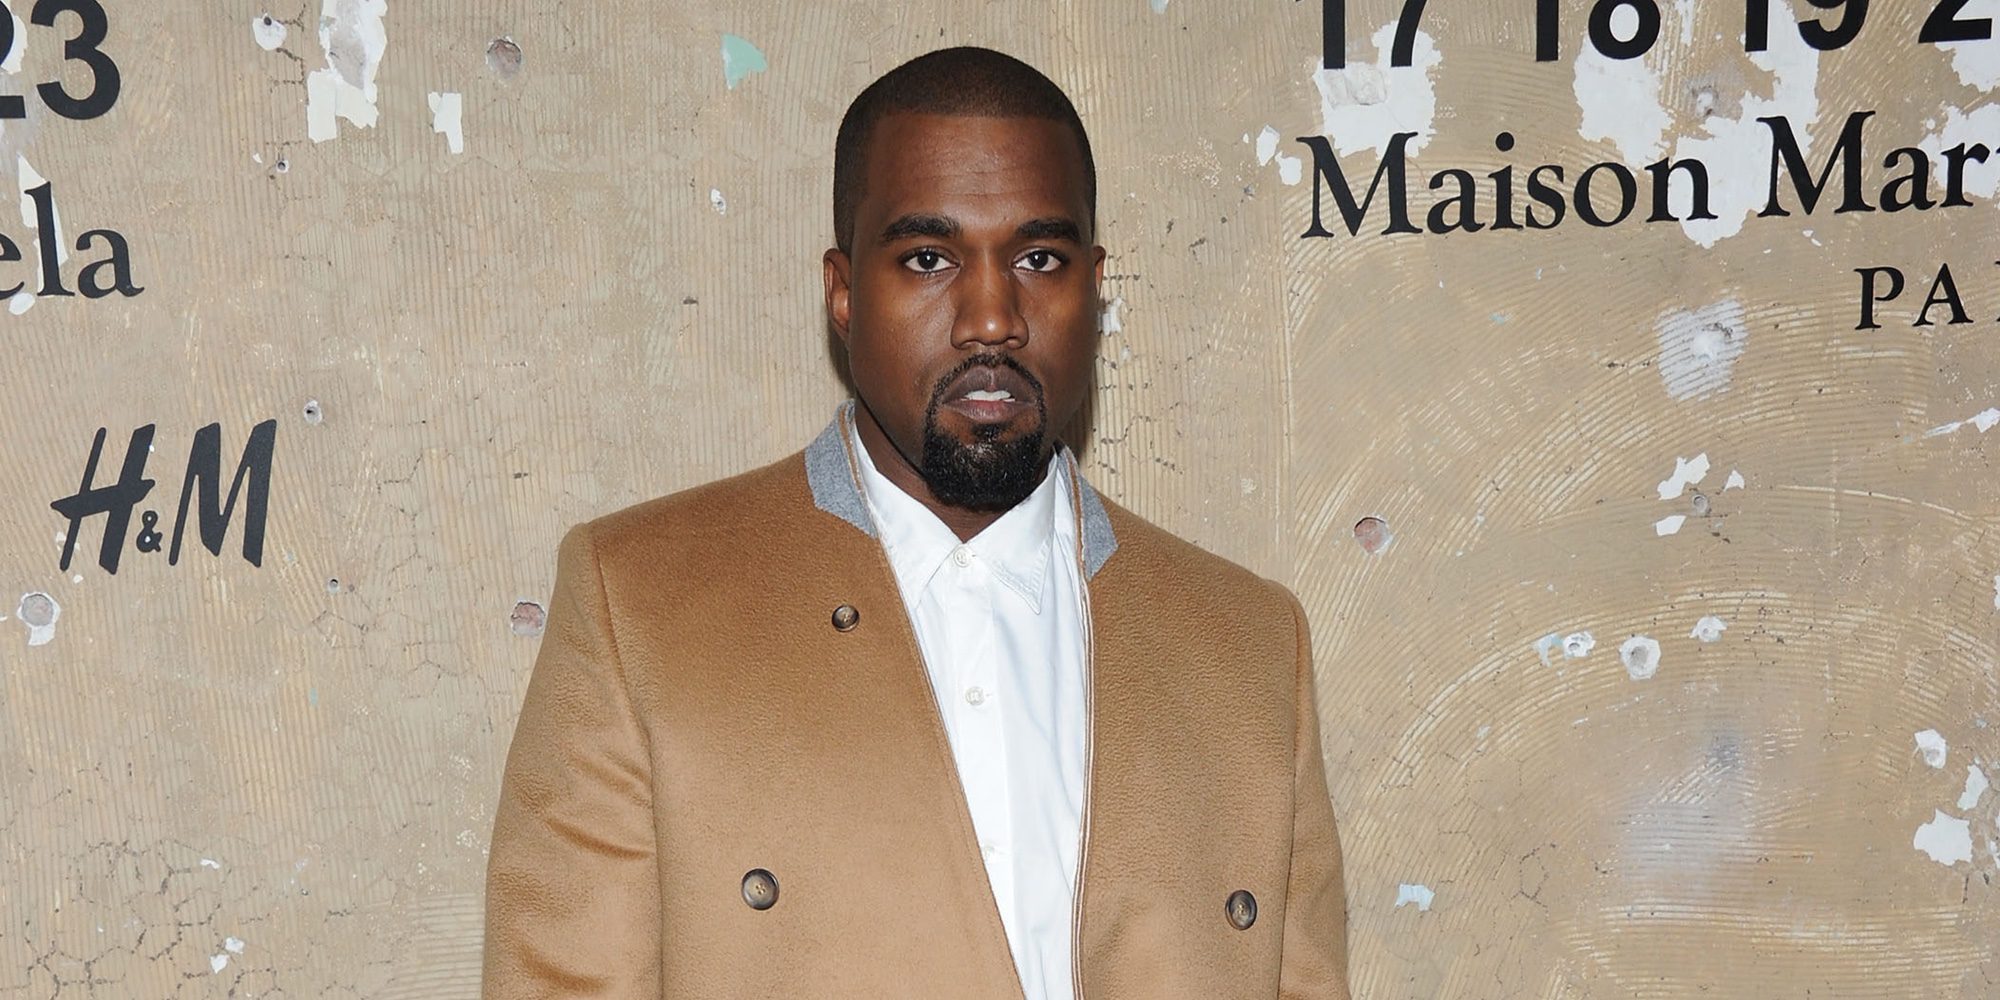 Kanye West reaparece públicamente tras su hospitalización luciendo pelo rubio